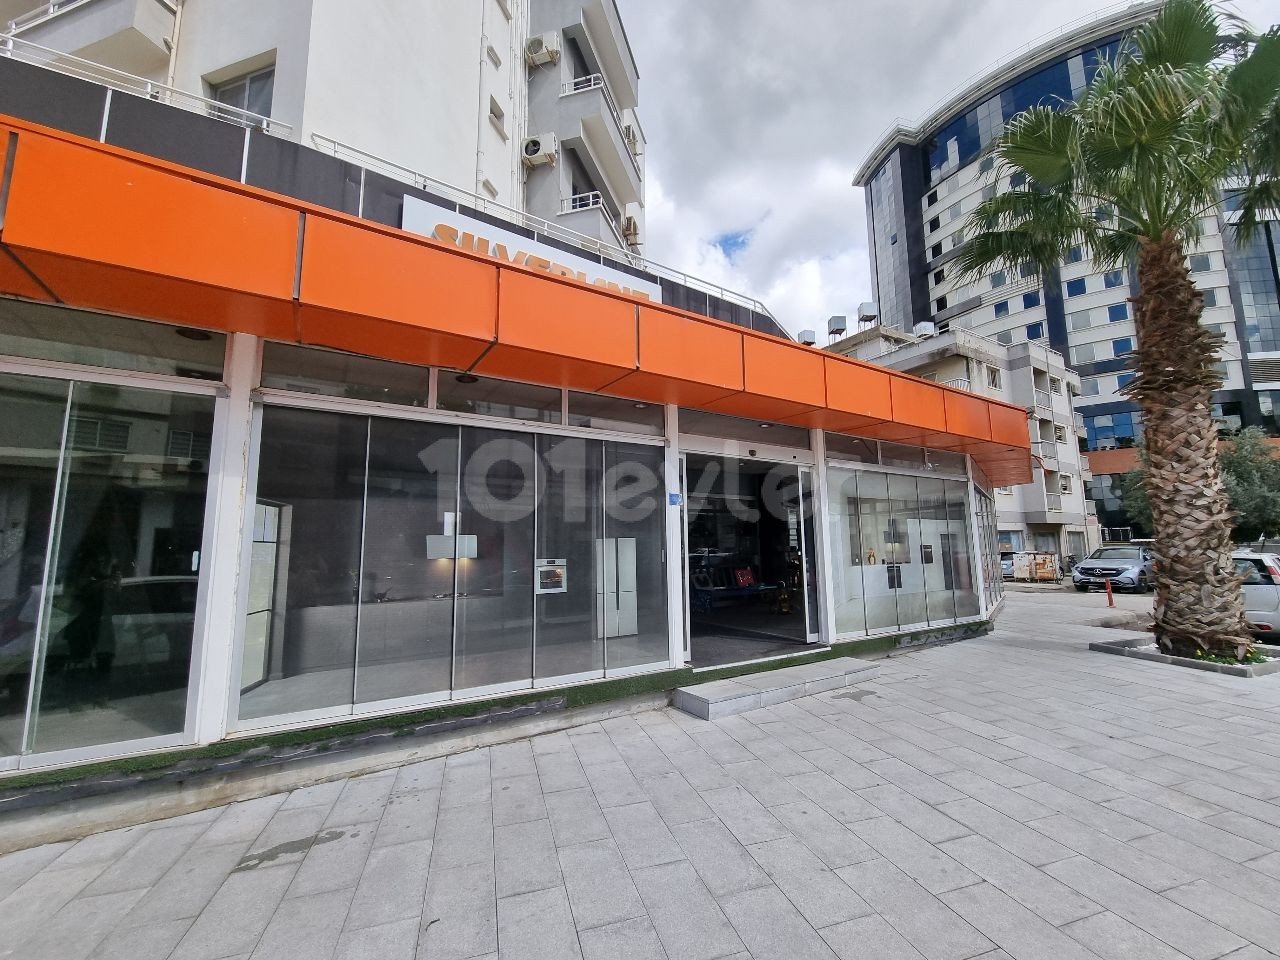 Dereboyu Straße auf der Hauptstraße ist für die Vermietung Shop / Restaurant in Form von Kapazität geeignet!